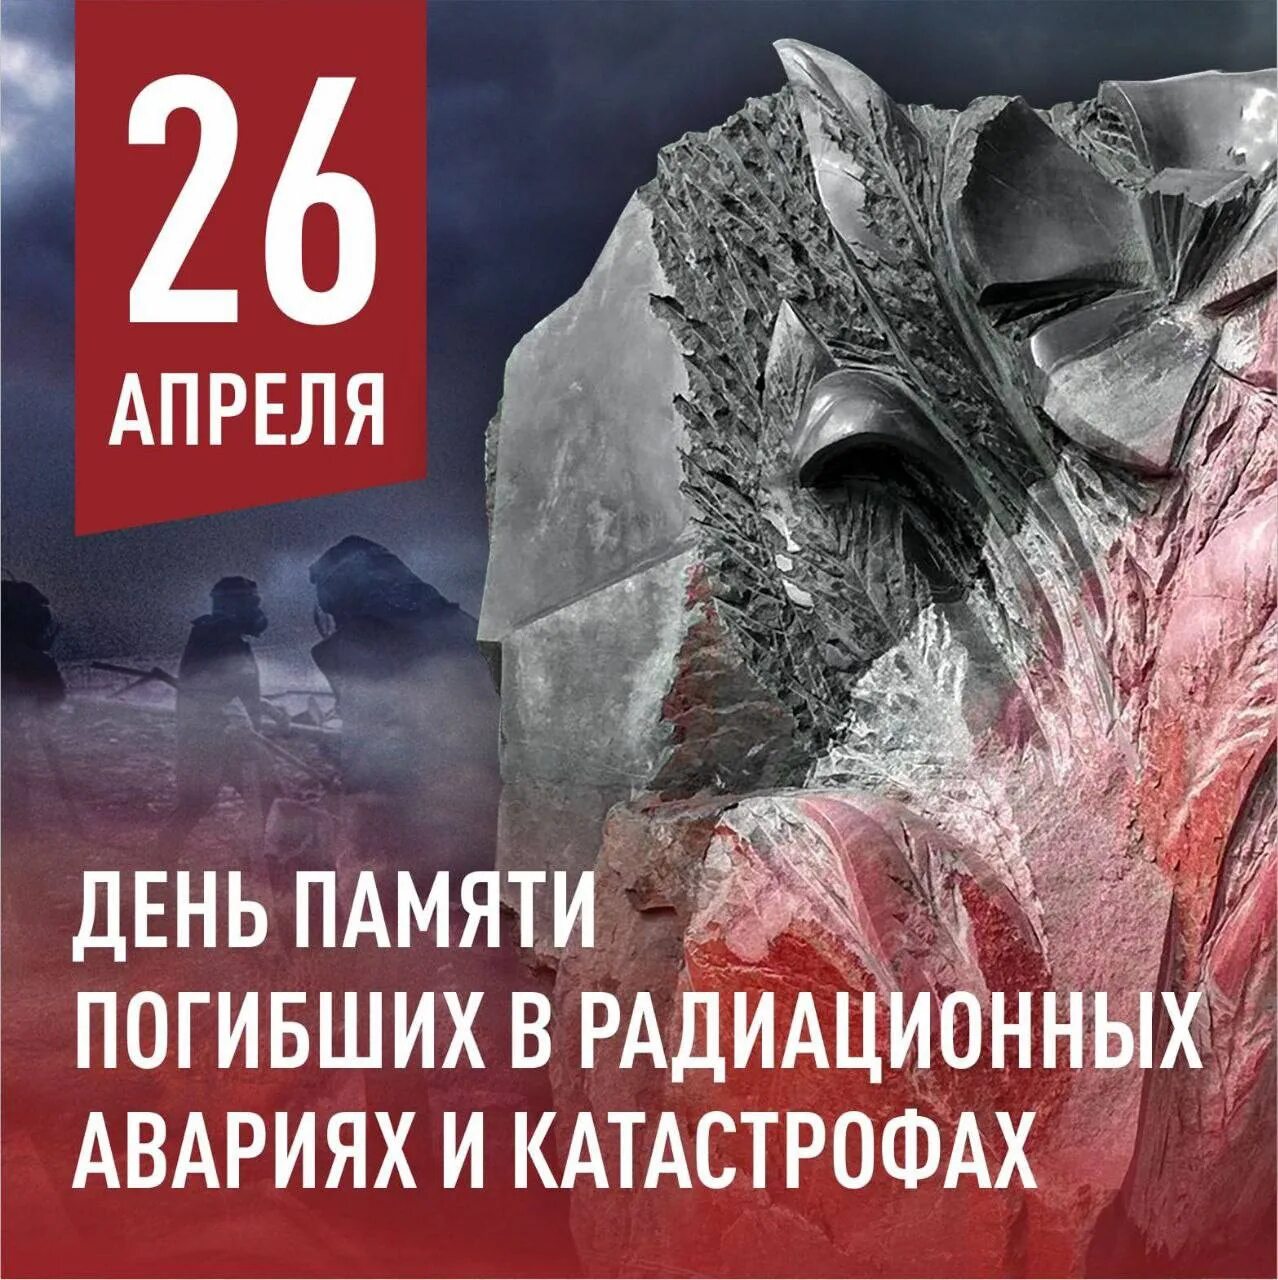 26 апреля 14 дней. 26 Апреля день памяти погибших в радиационных авариях и катастрофах. 26 Апреля день памяти. День памяти погибших в радиационных катастрофах. Чернобыль день памяти.